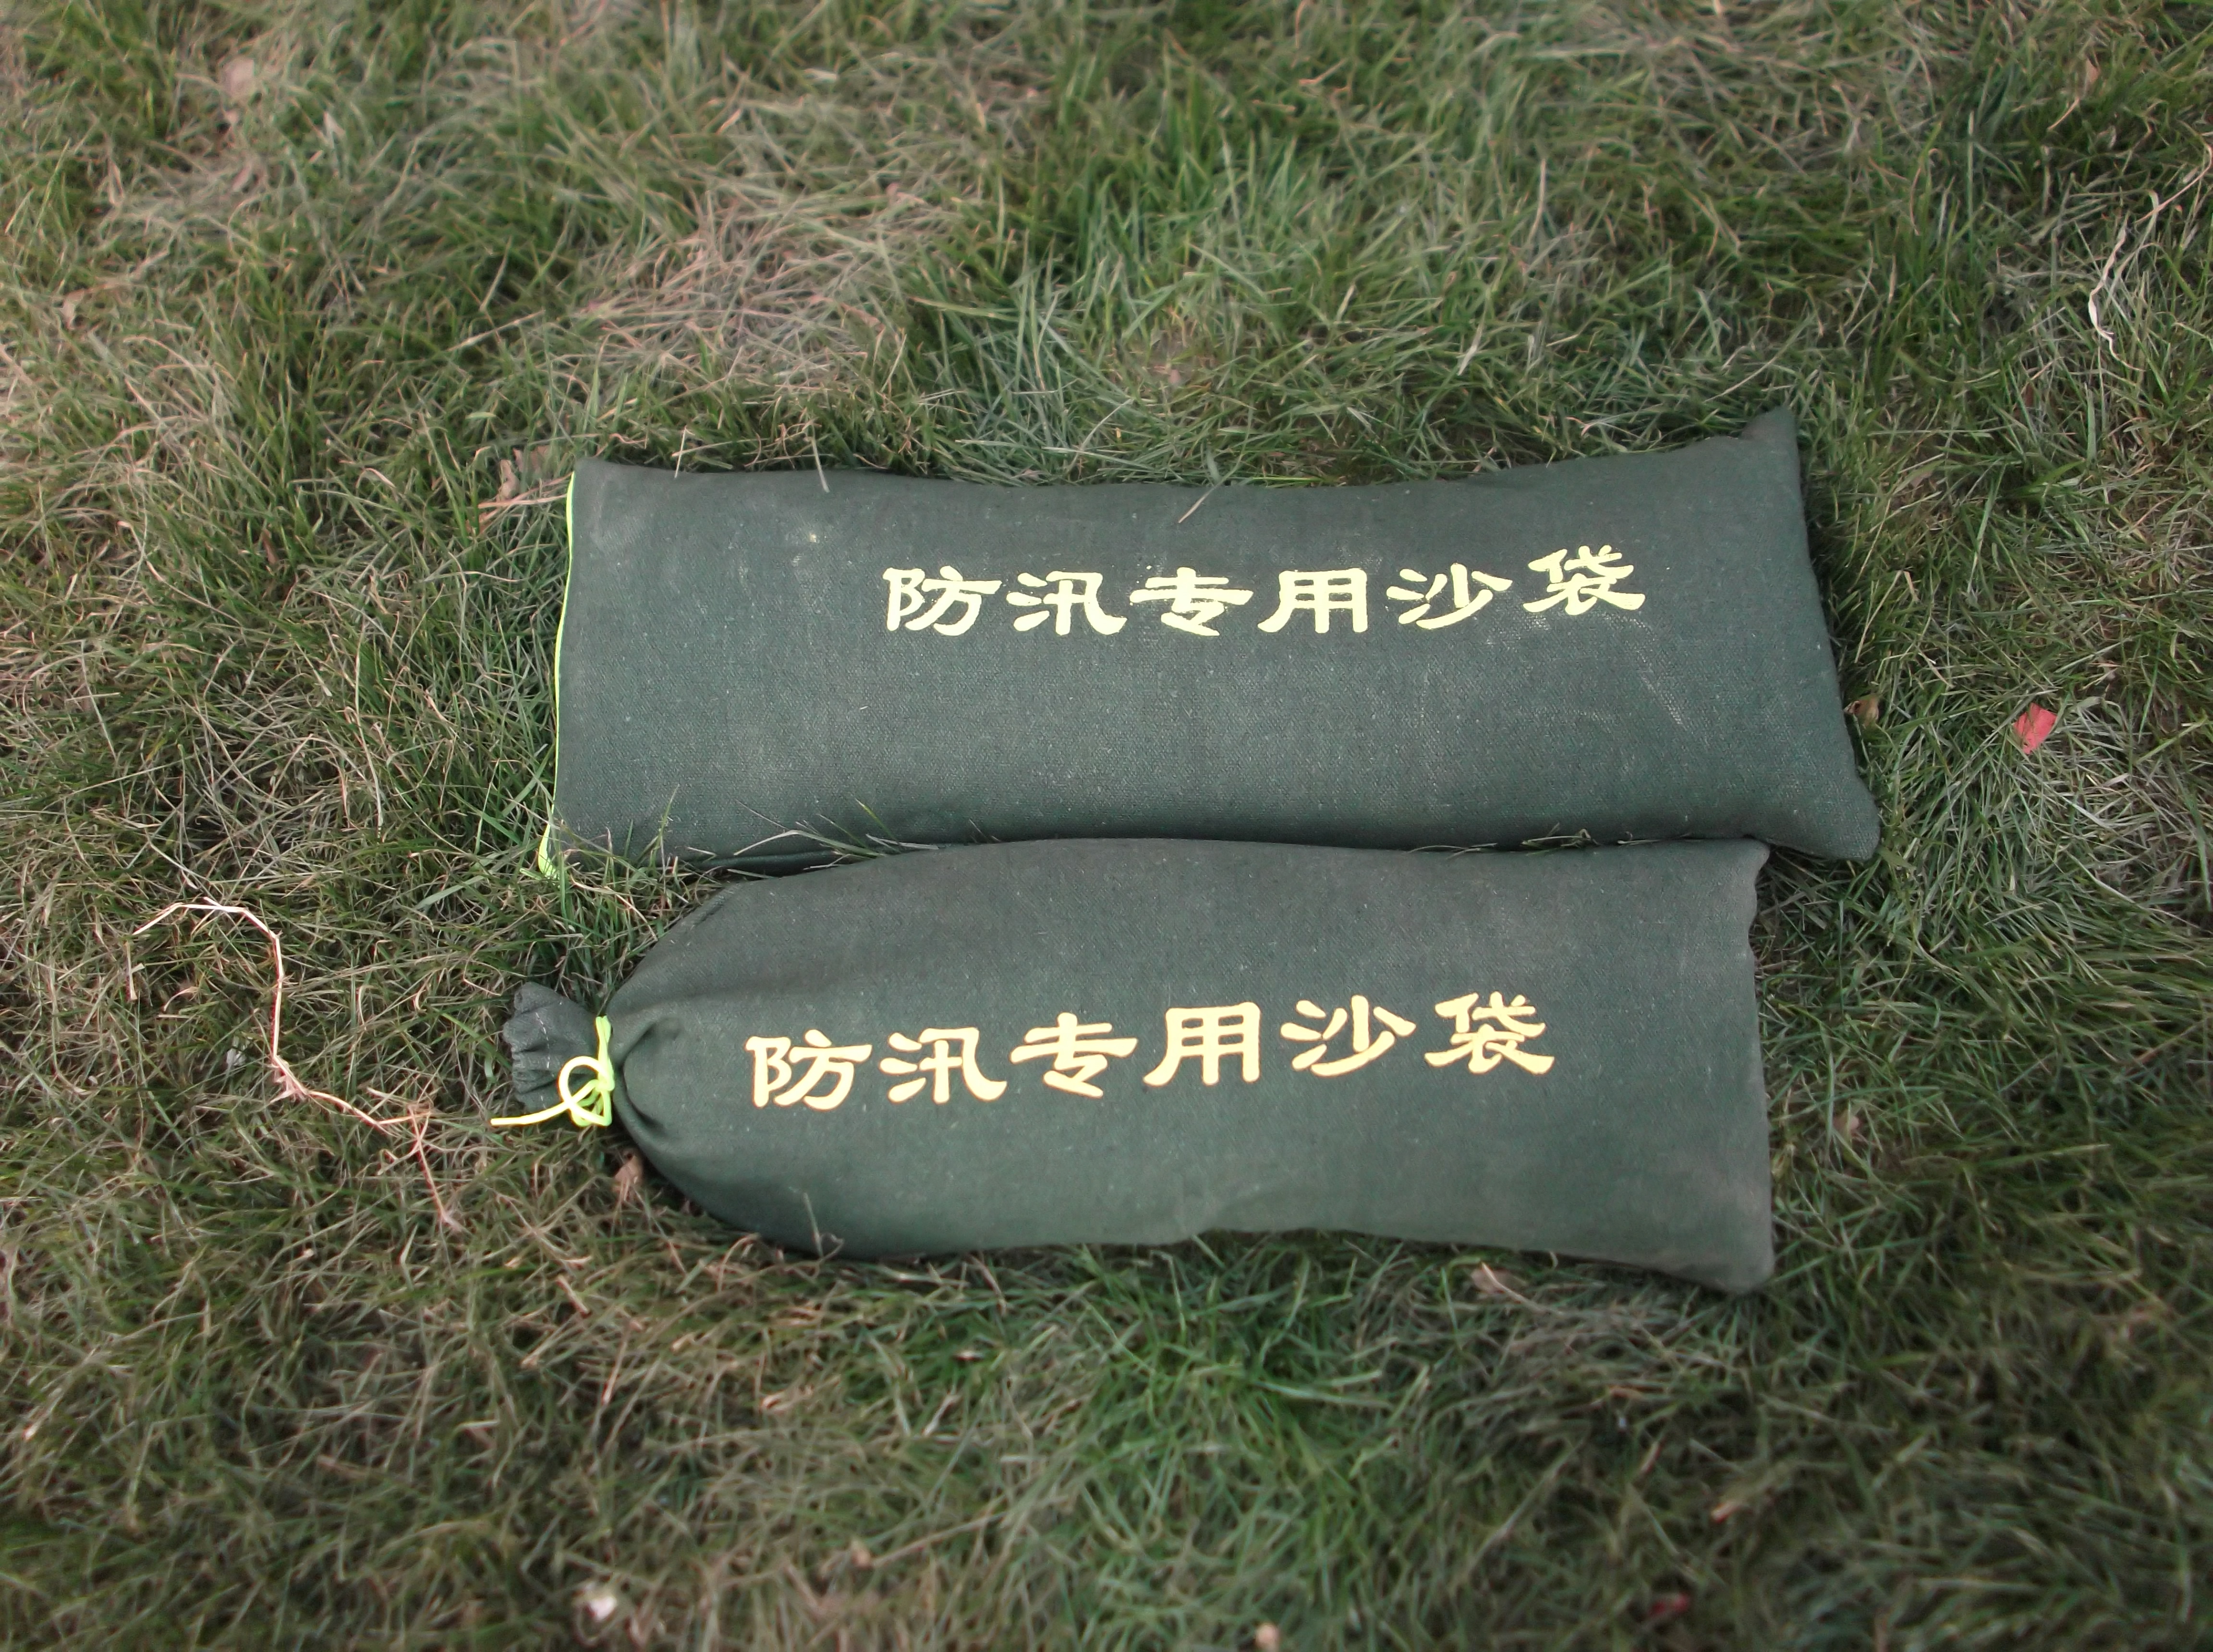 北京防汛沙袋 北京防汛沙袋厂家 北京防汛沙袋价格